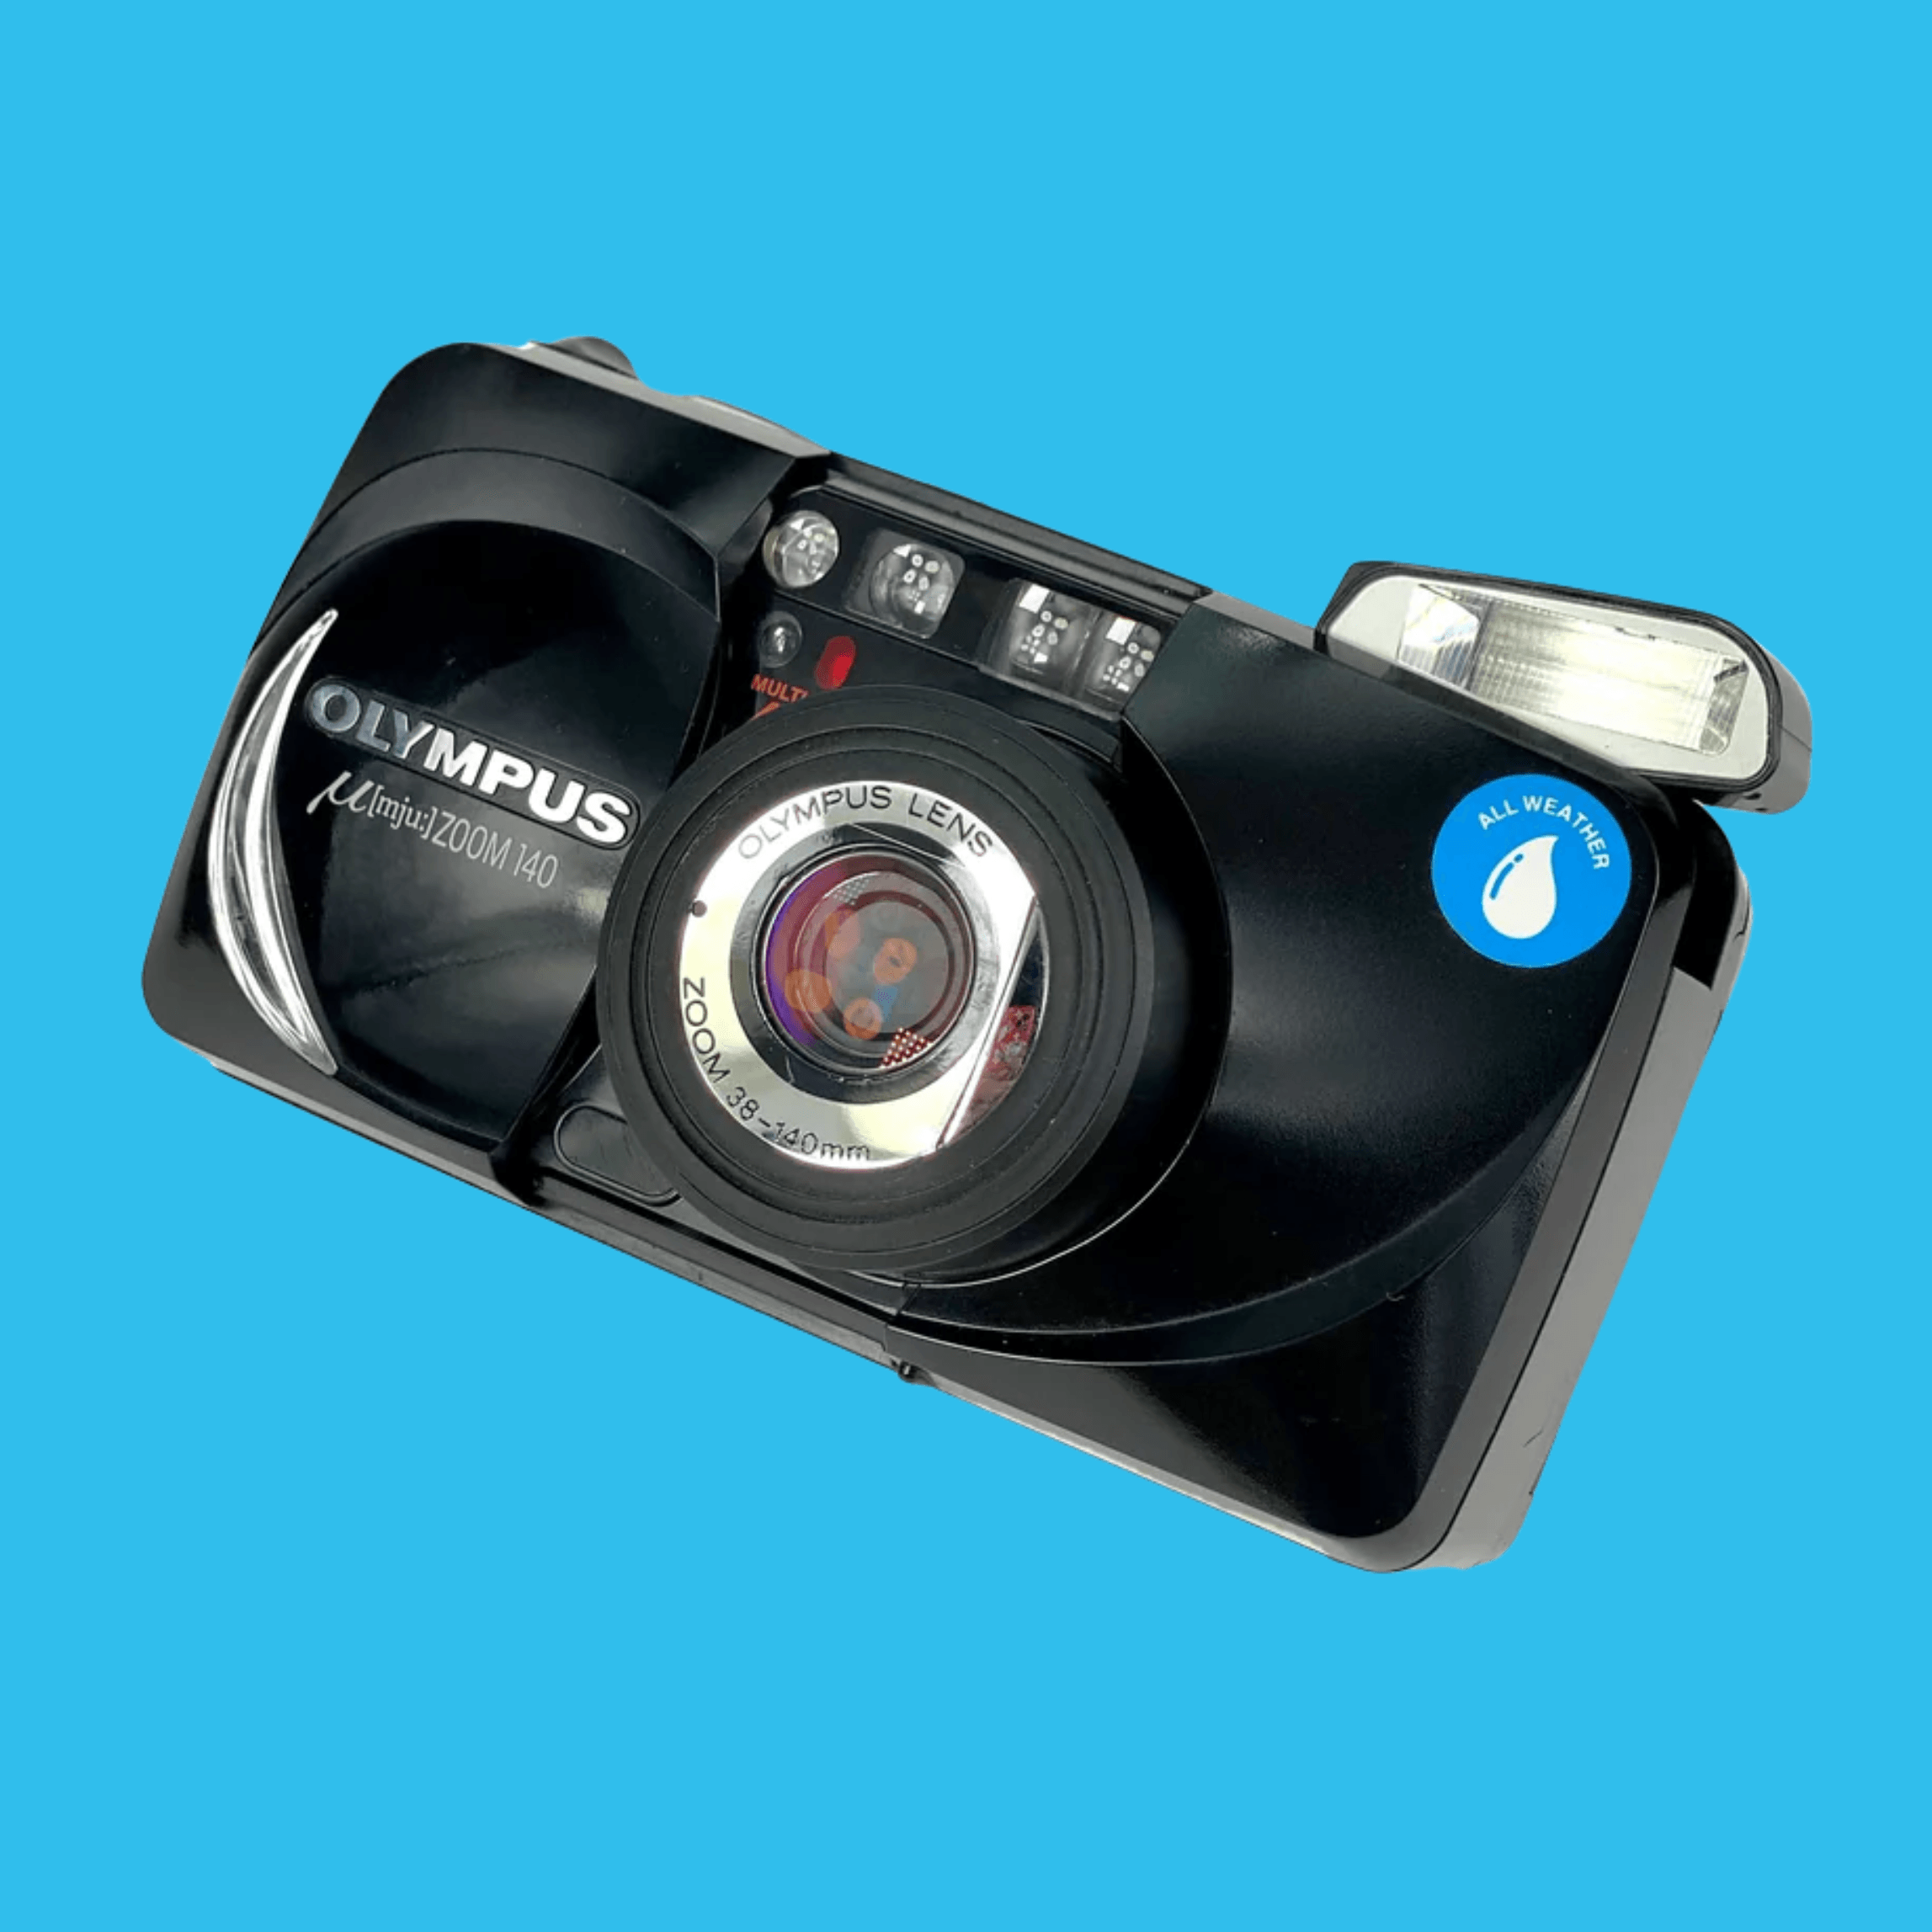 オリンパス Mju Zoom 140 35mm フィルム カメラ ポイント u0026 シュート – Film Camera Store